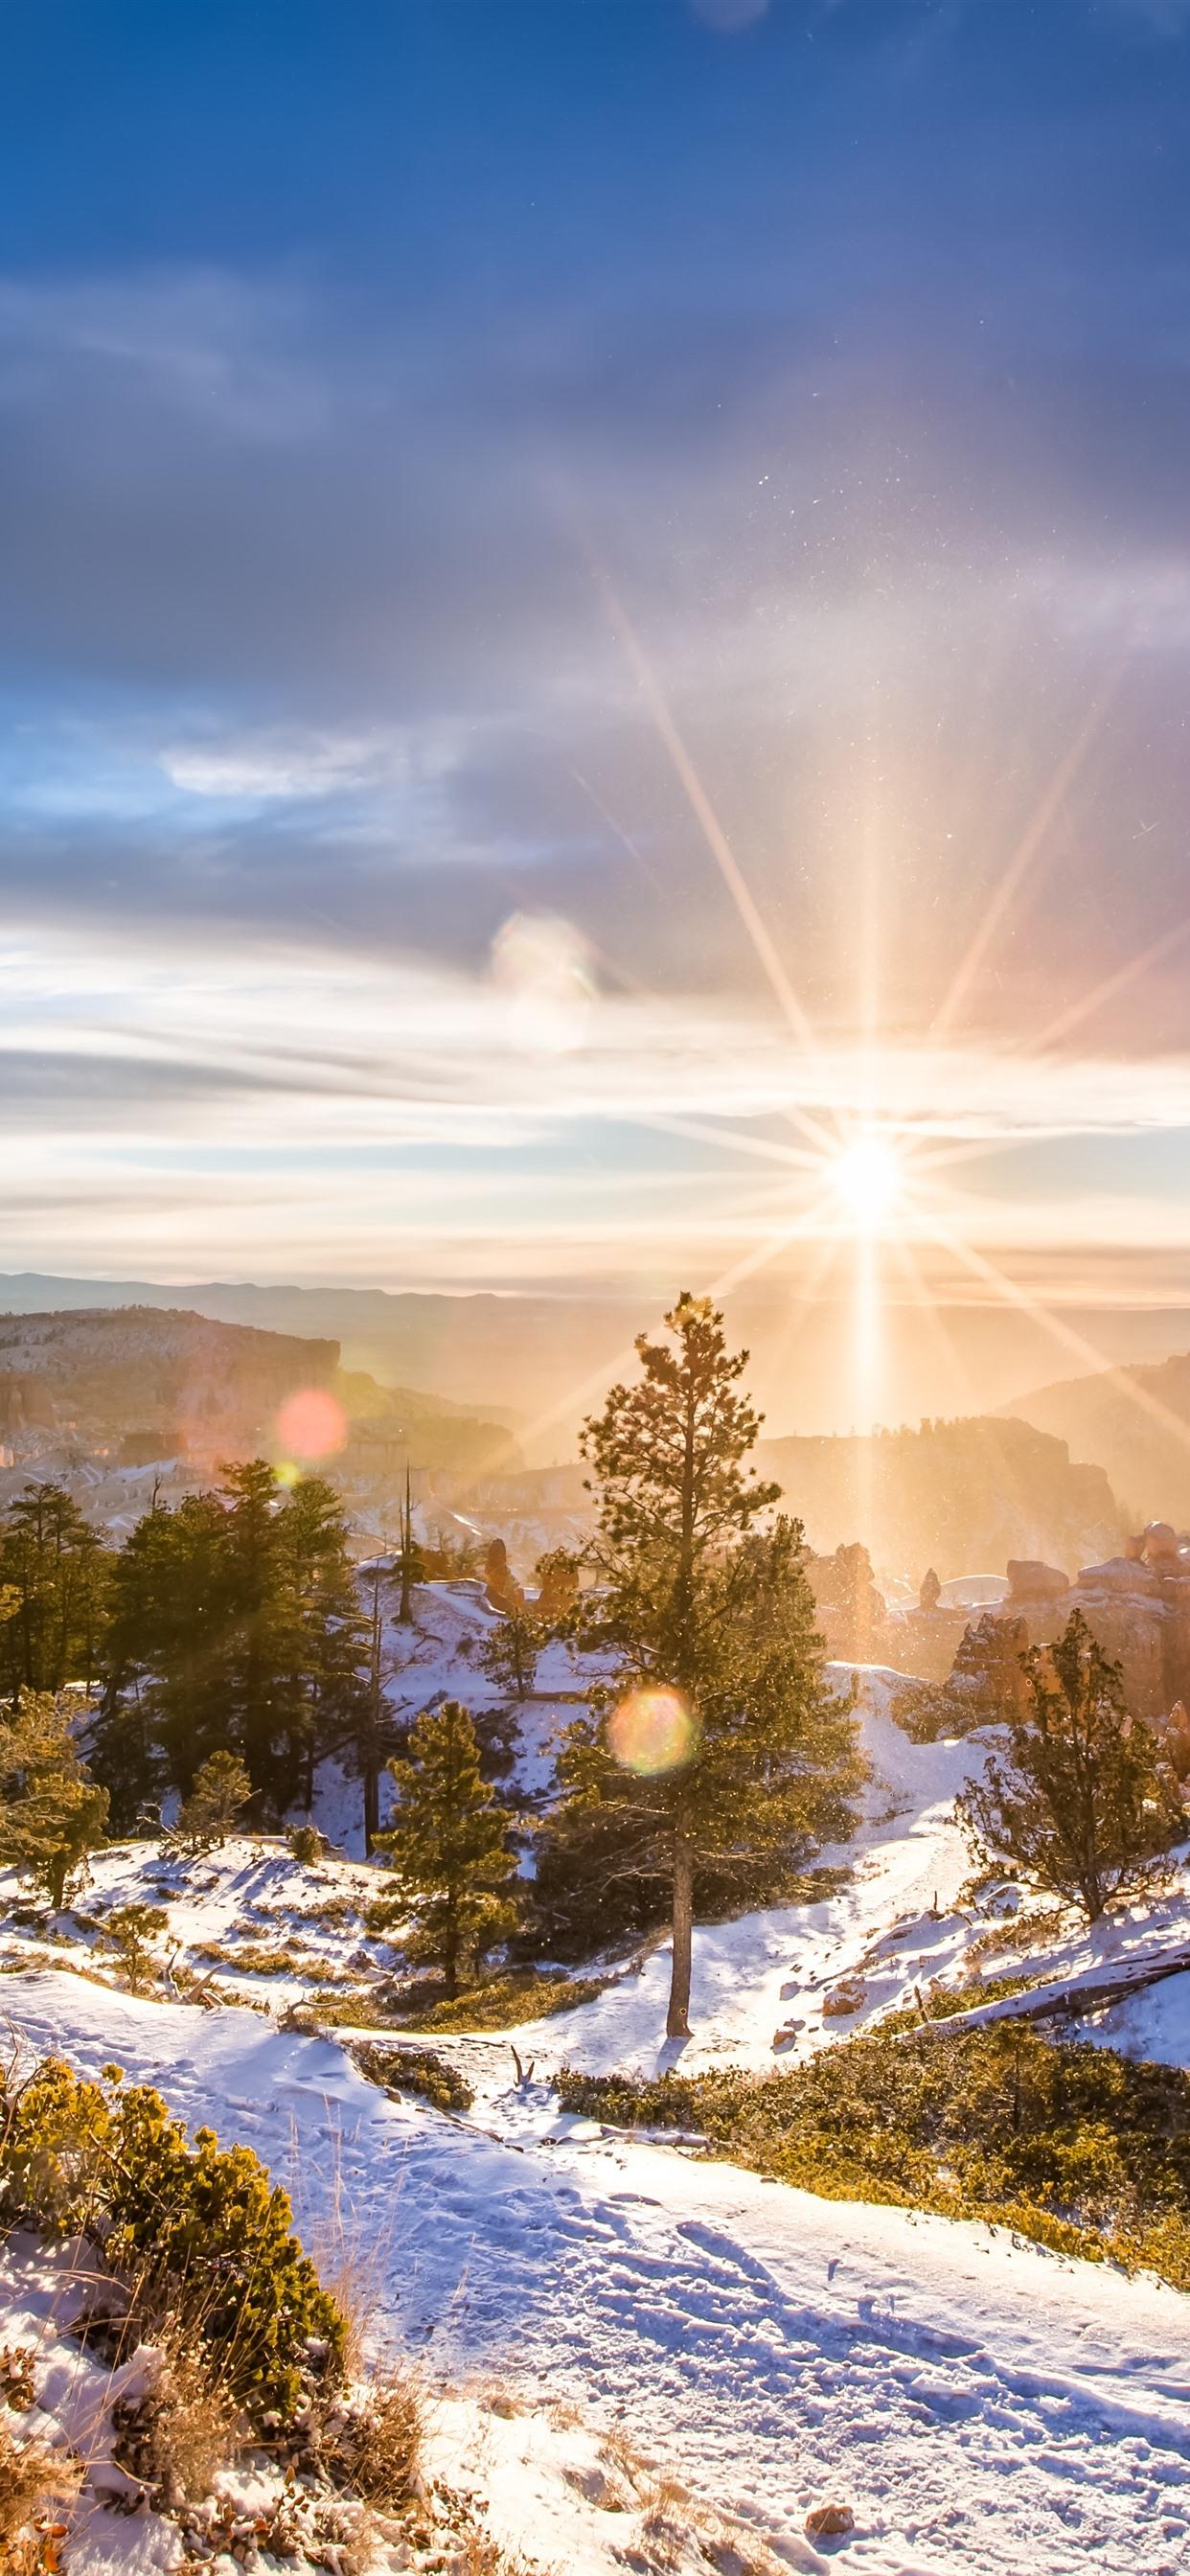 Восход Солнца Зимой На Слайд-Маунтин Вблизи Рено, Штат Невада На Горе. Роуз  Шоссе. Красочные Облака И Снежный Пейзаж. Фотография, картинки, изображения  и сток-фотография без роялти. Image 68542595